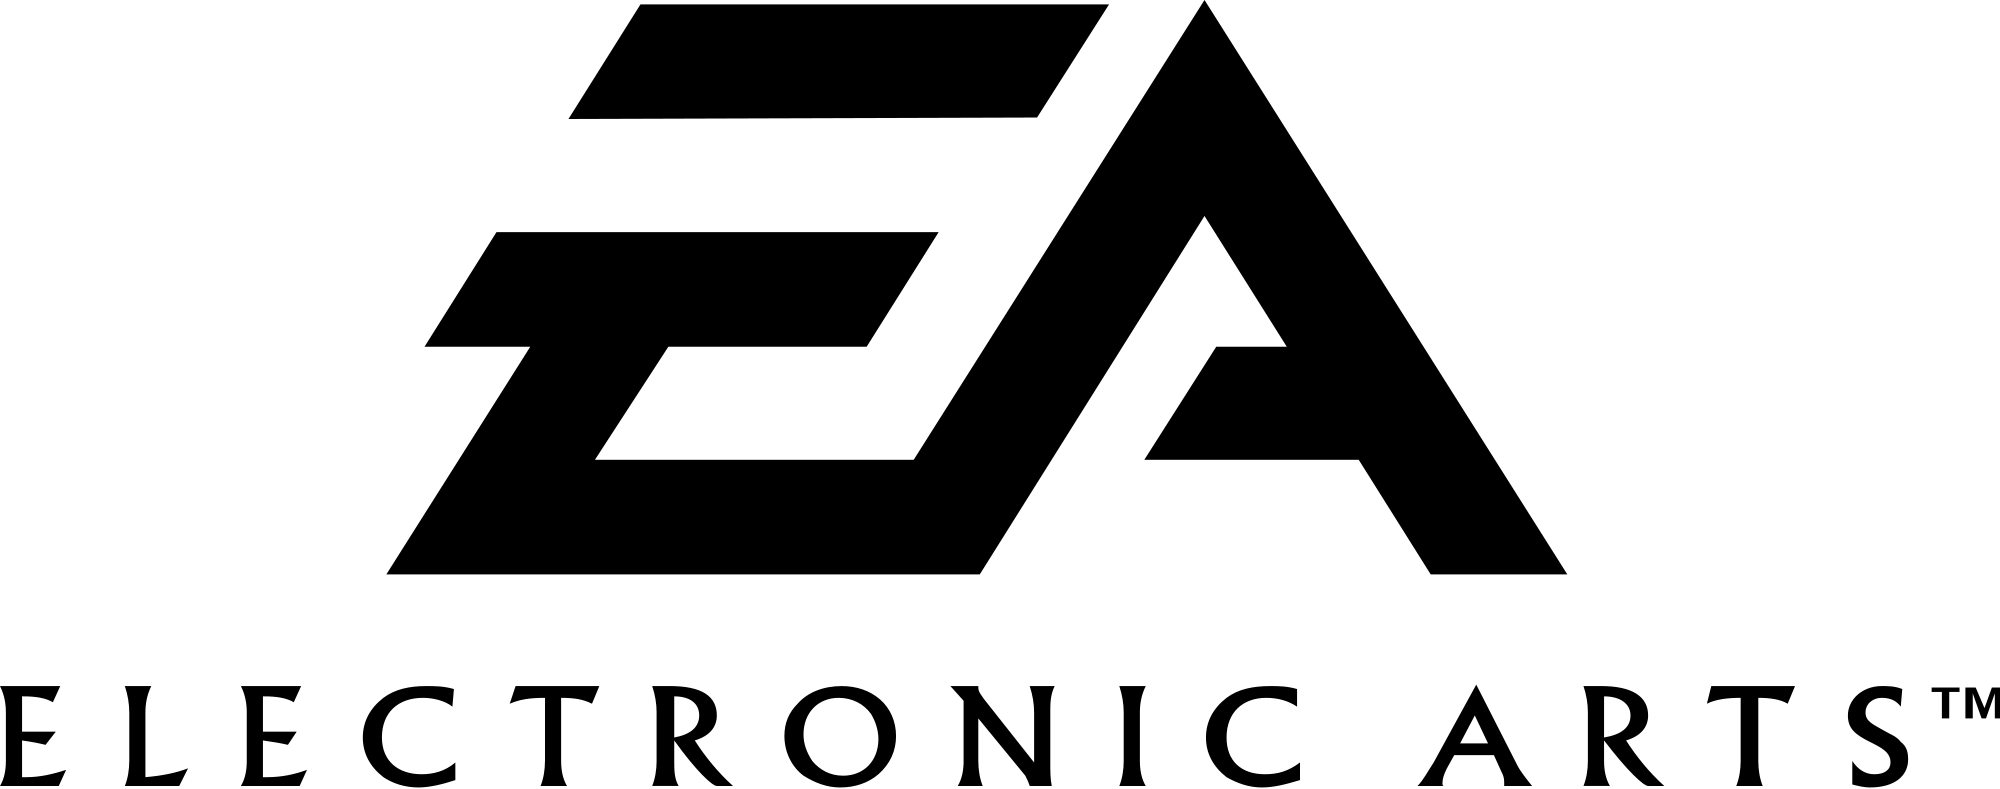 File:EA logo.png